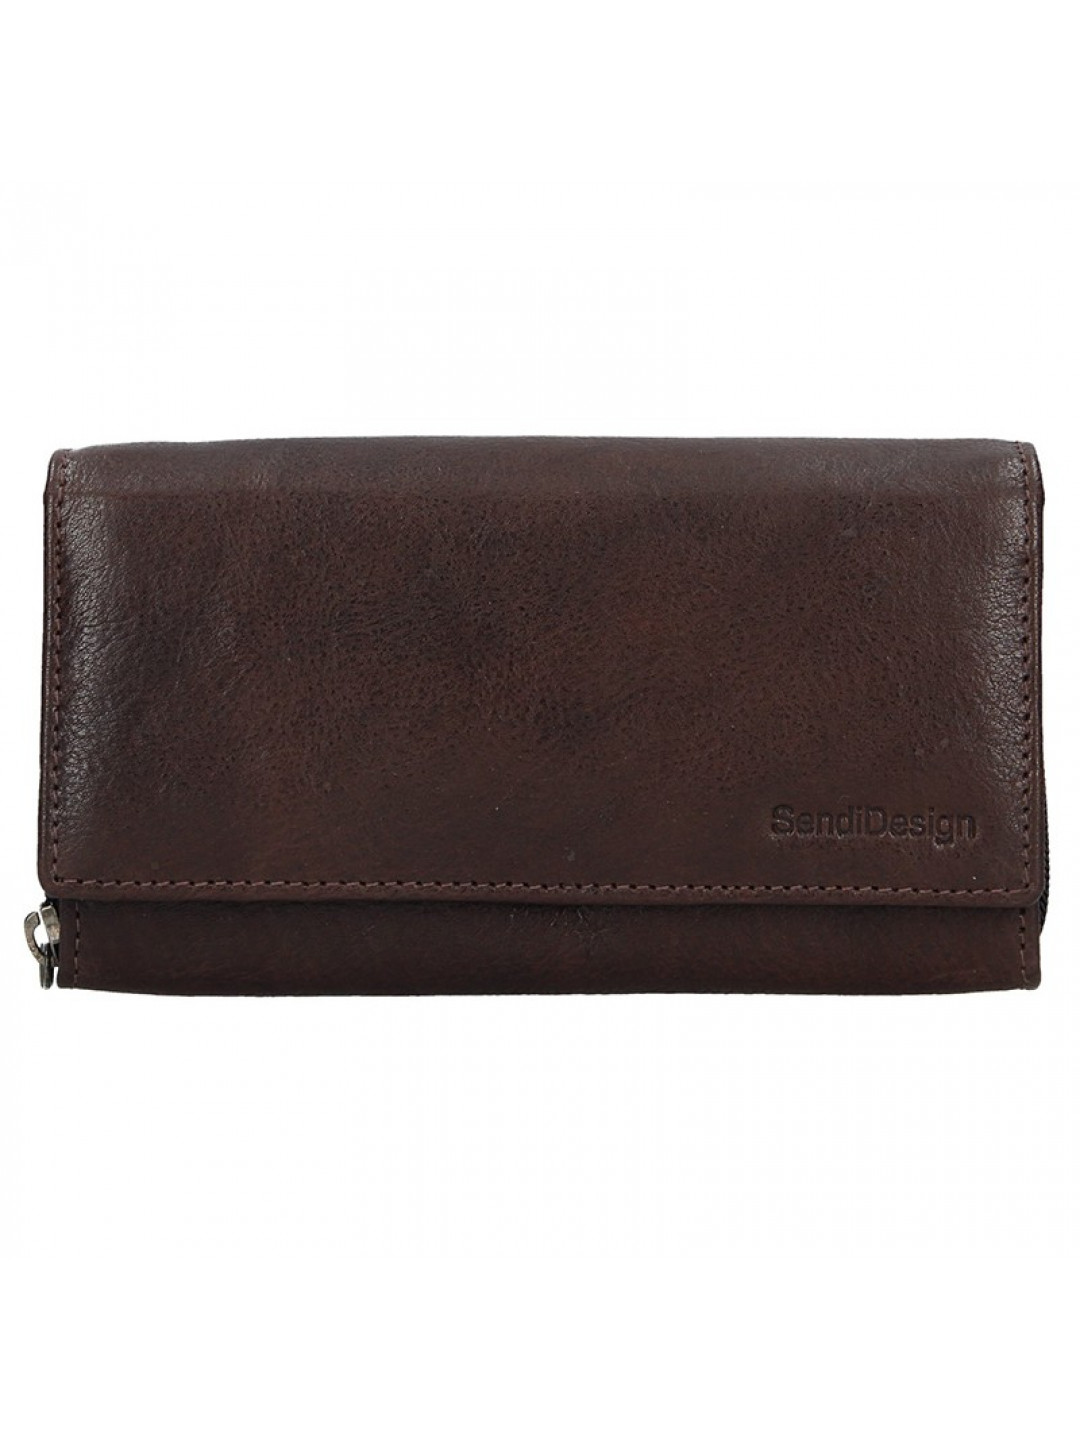 Dámská kožená peněženka SendiDesign Aneta – tmavě hnědá